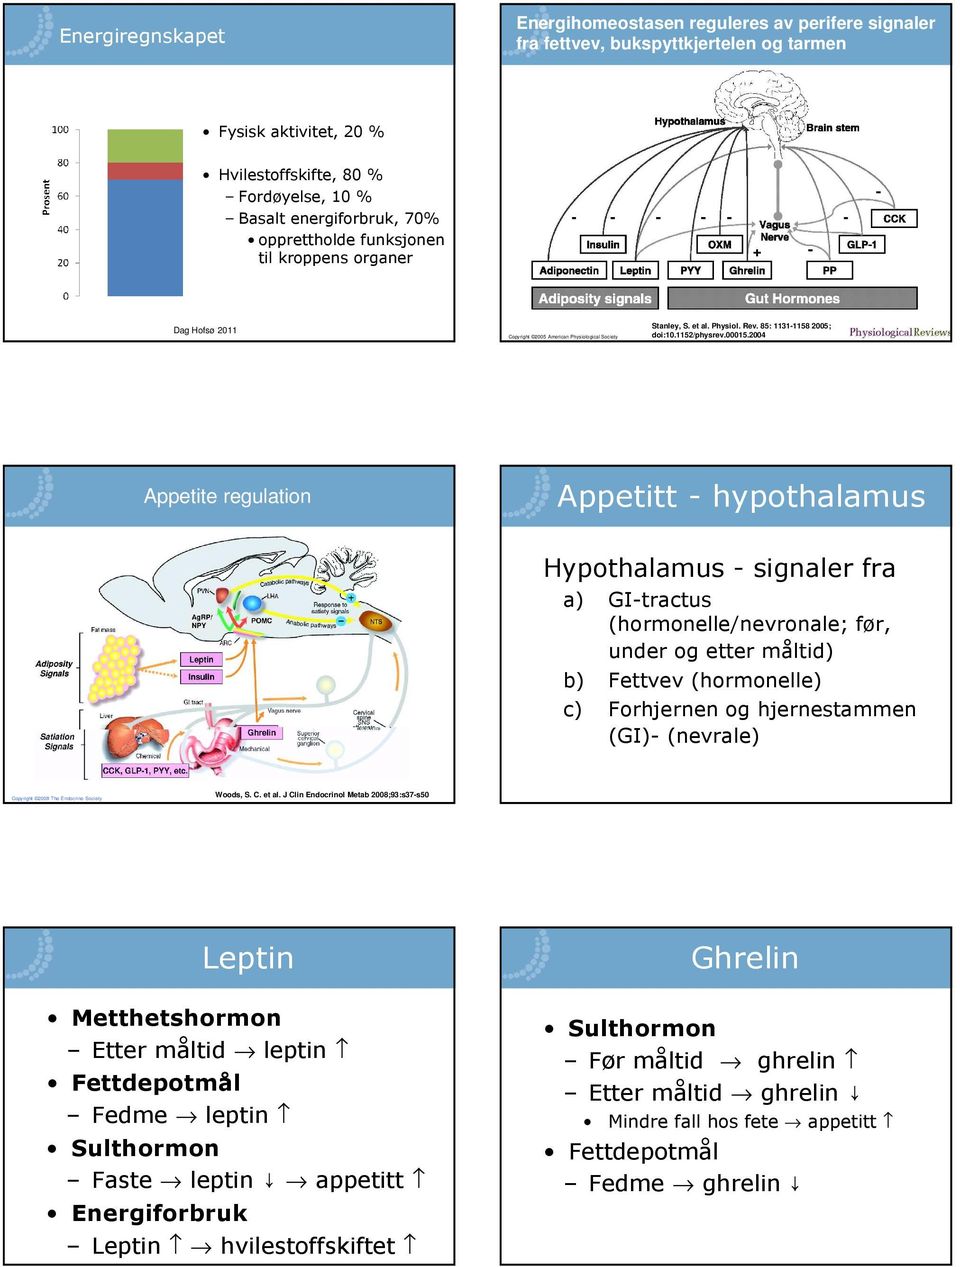 2004 Appetite regulation Appetitt - hypothalamus Hypothalamus - signaler fra a) GI-tractus (hormonelle/nevronale; før, under og etter måltid) b) Fettvev (hormonelle) c) Forhjernen og hjernestammen